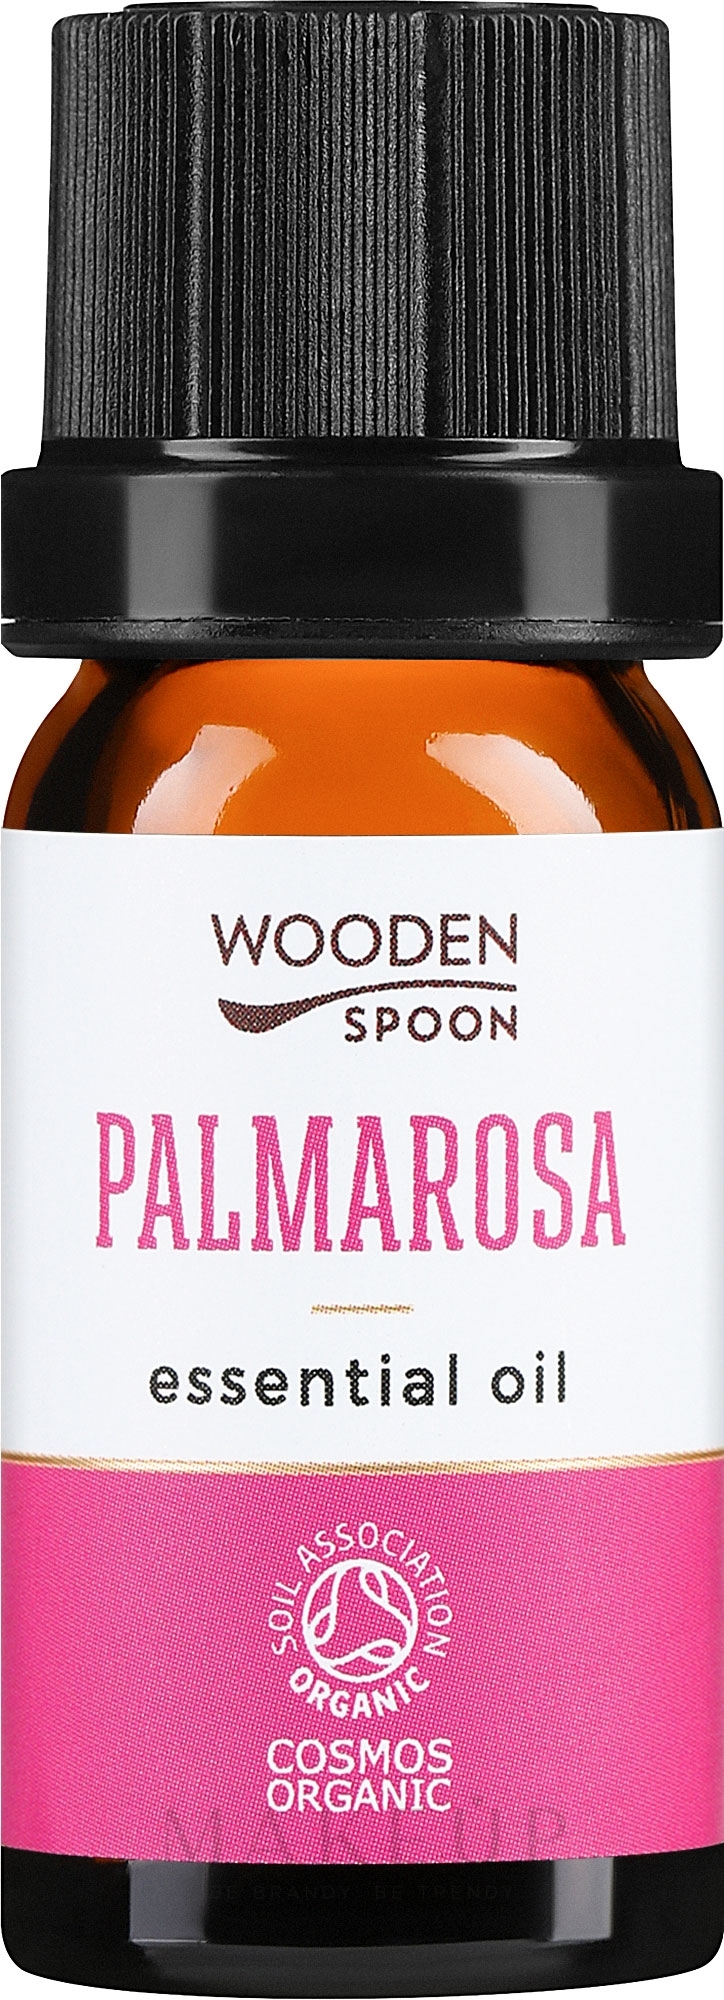 Ätherisches Öl Palmarosa - Wooden Spoon Palmarosa Essential Oil — Bild 5 ml